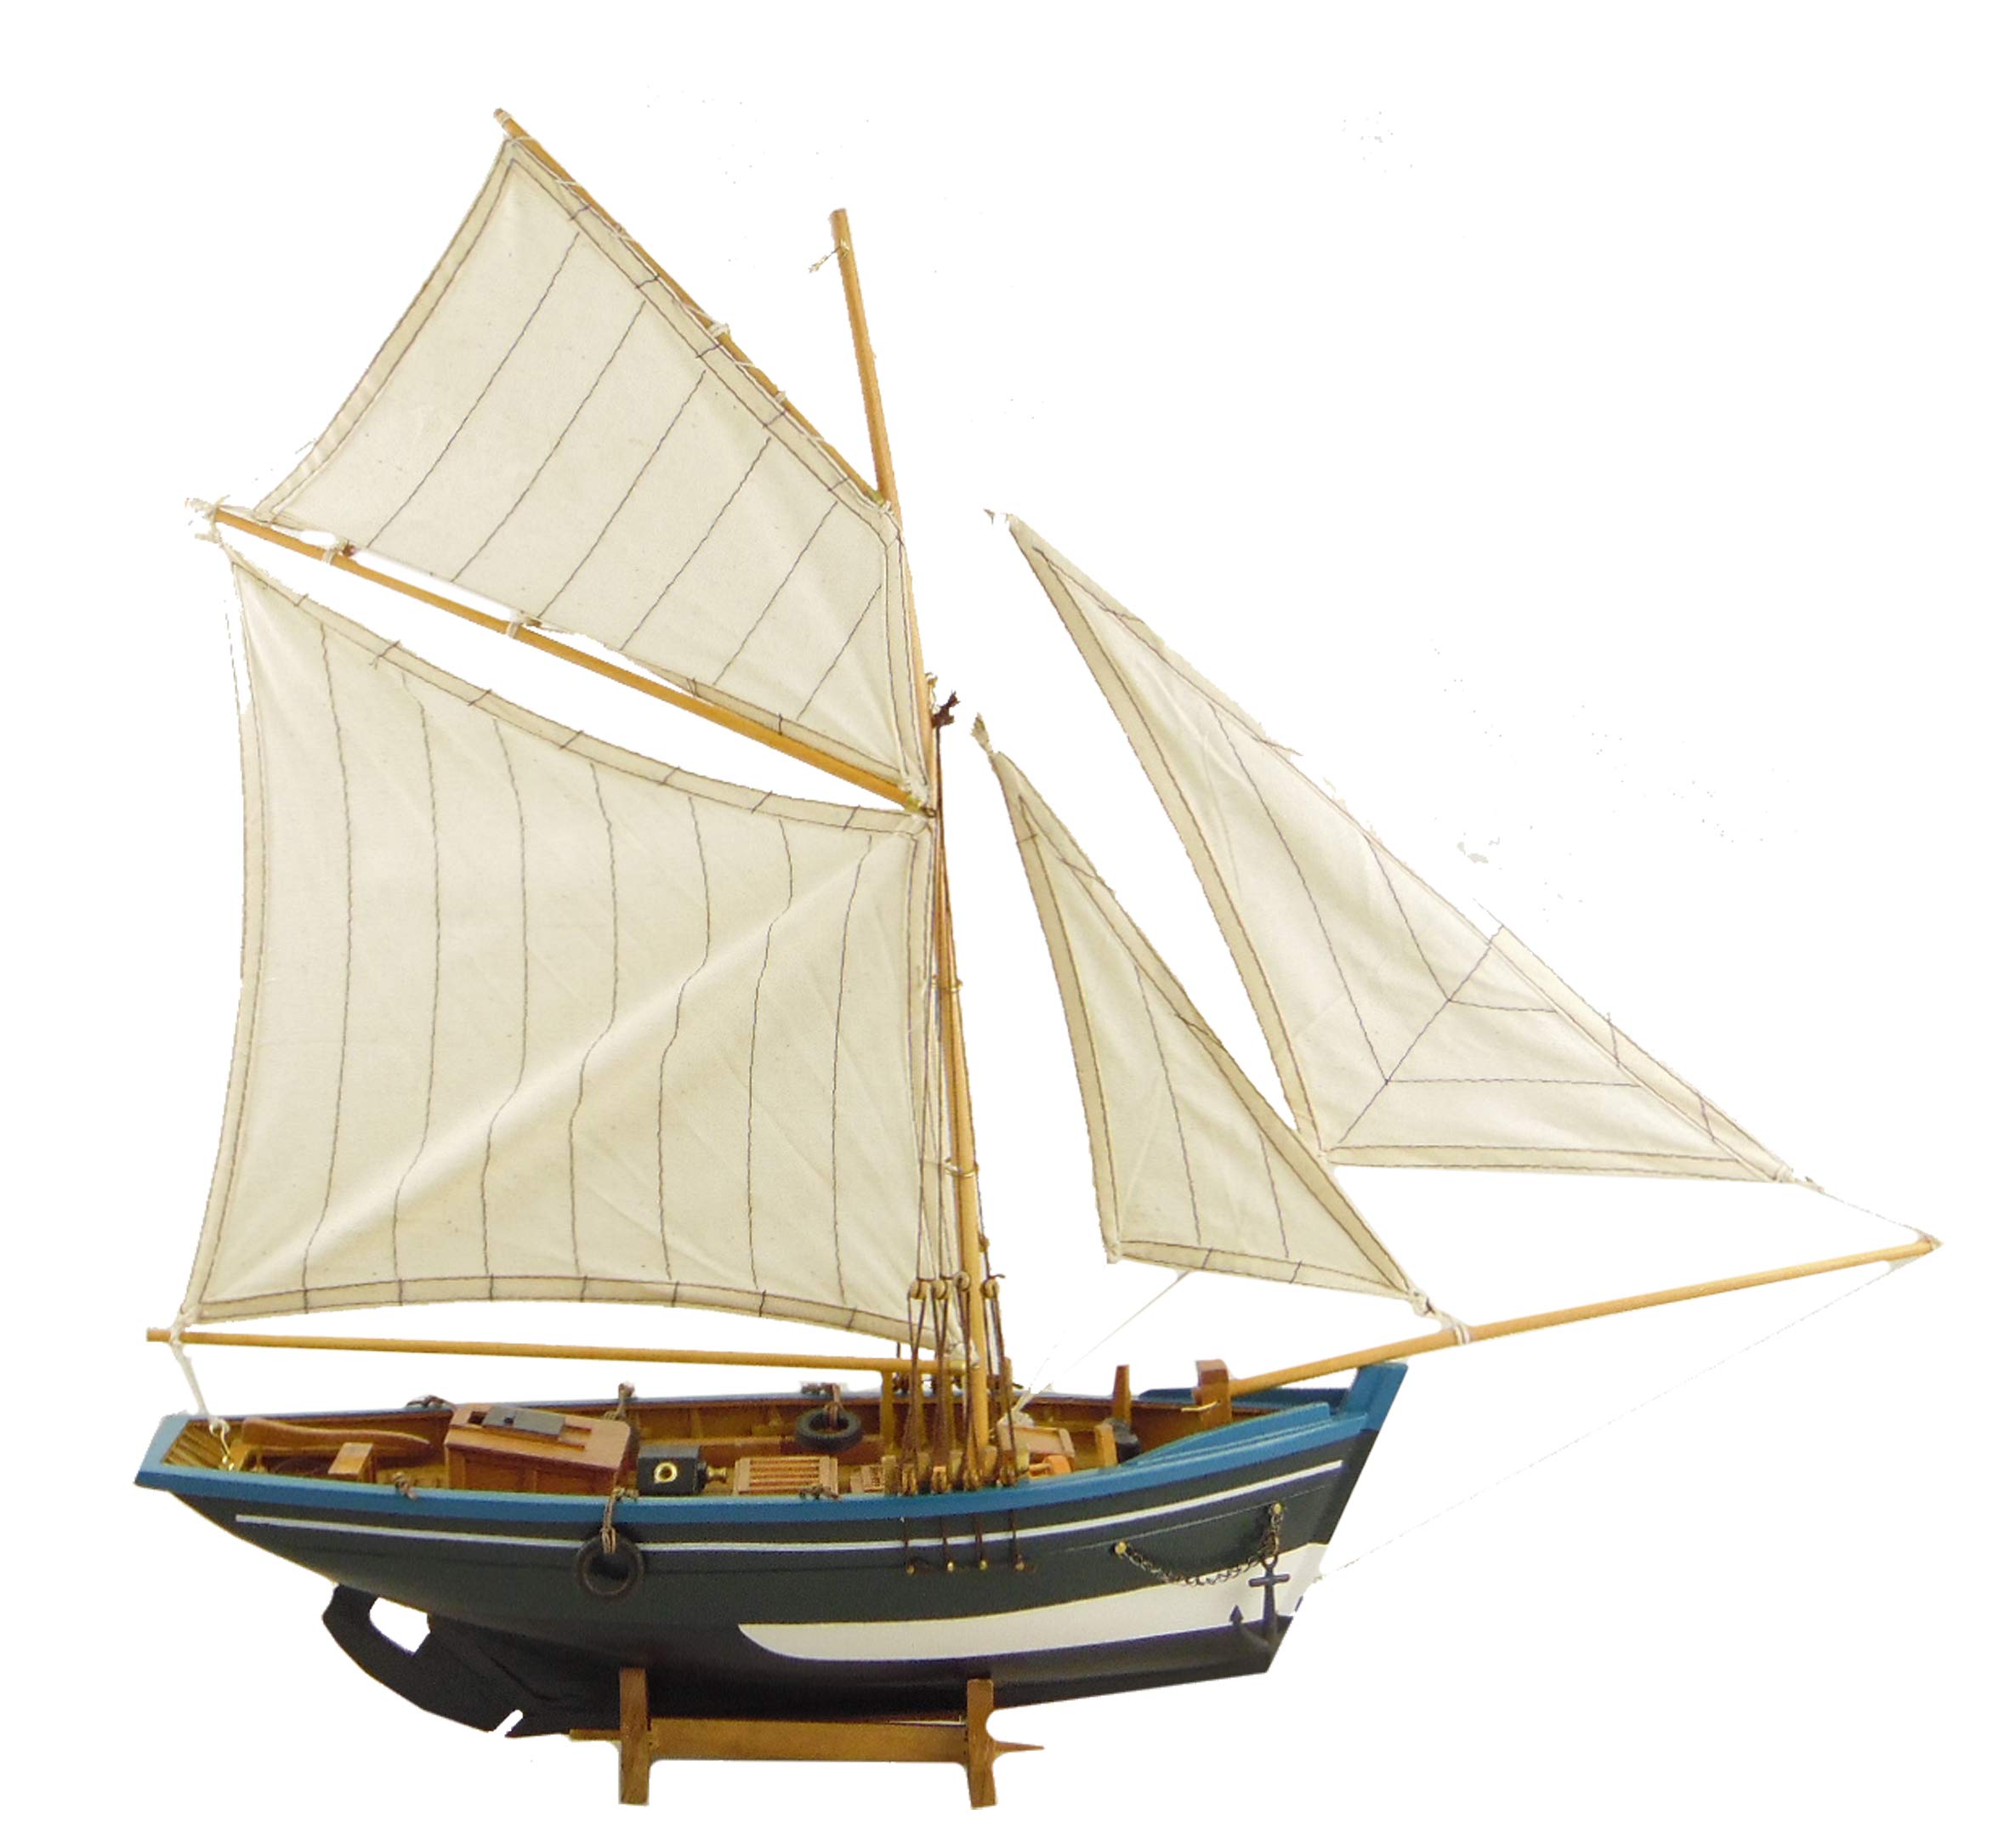 osters muschel-sammler-shop Jolle │ Boot │ Segelschiff │ viele liebevolle Details │ Holzmodell │ Farbe blau│ L61-H55-T15cm